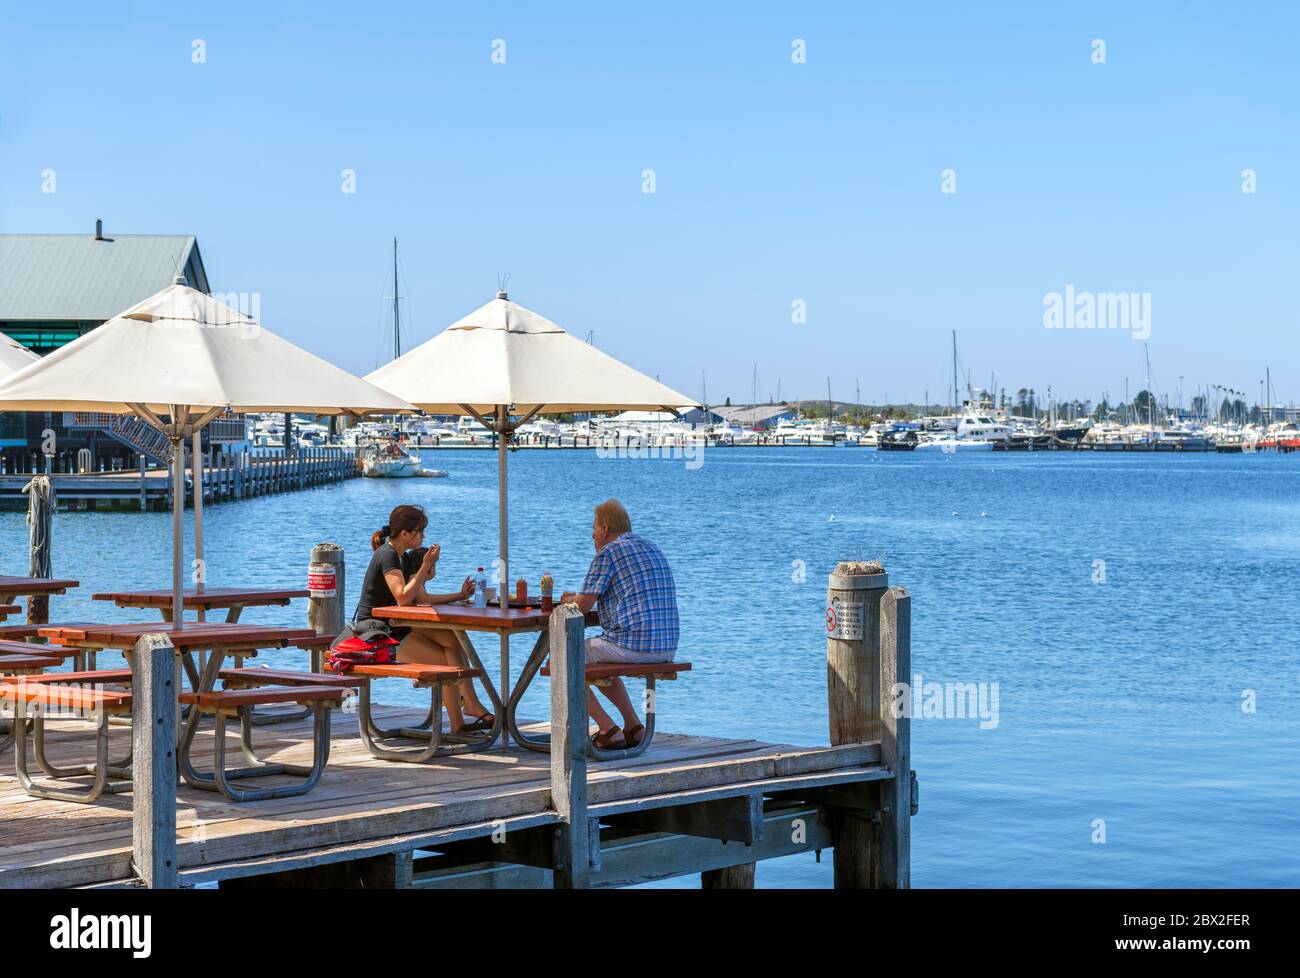 Couple assis dans un café/restaurant en bord de mer (Cicerello's), jetée de Fremantle, port de pêche, Fremantle, Australie occidentale, Australie Banque D'Images